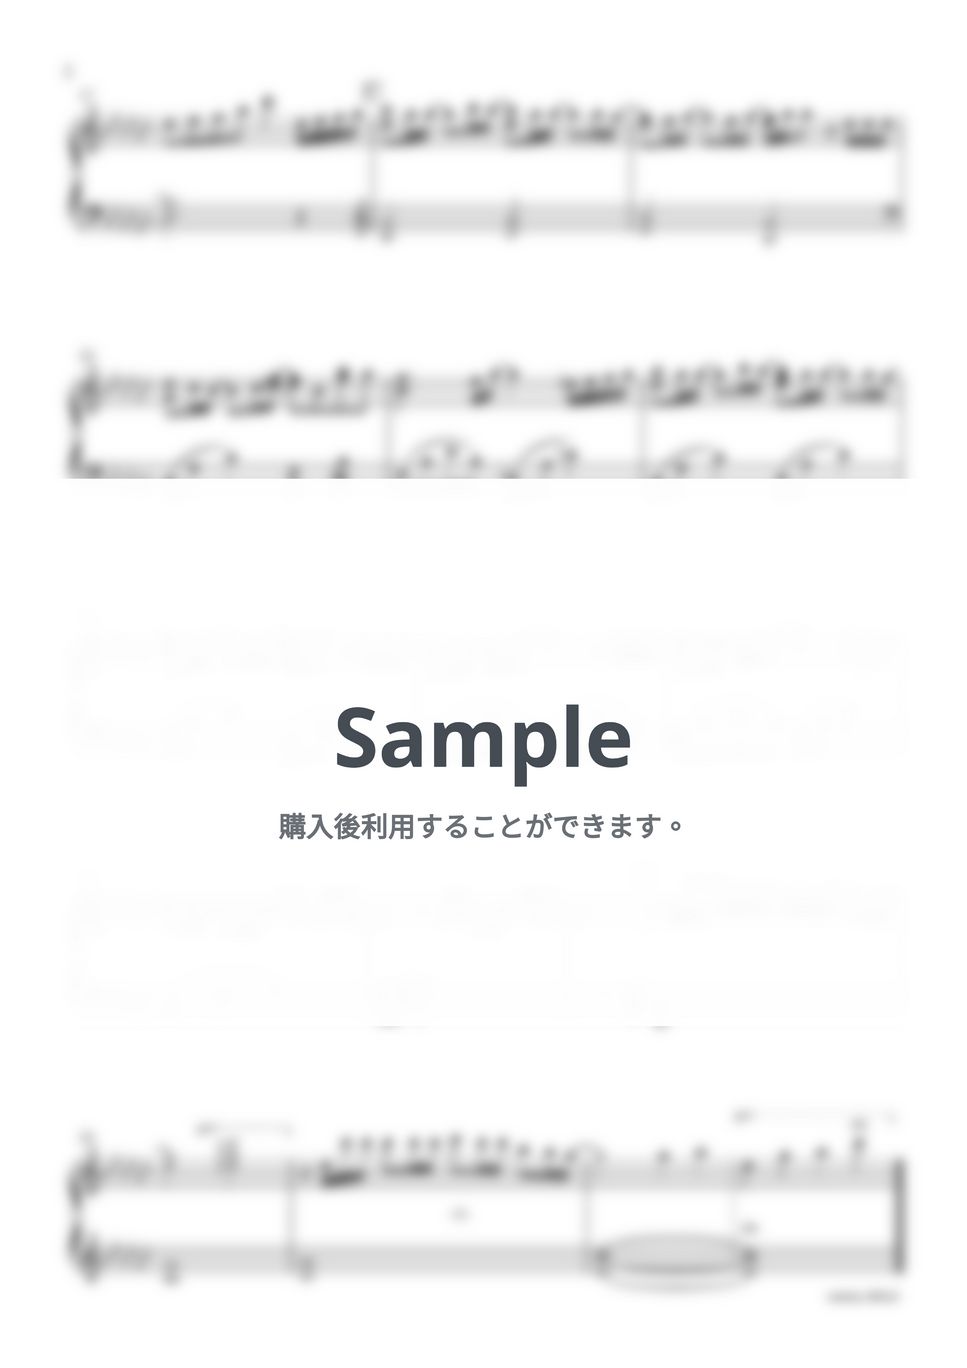 菅田将暉 - ラストシーン -Piano Version- by sammy